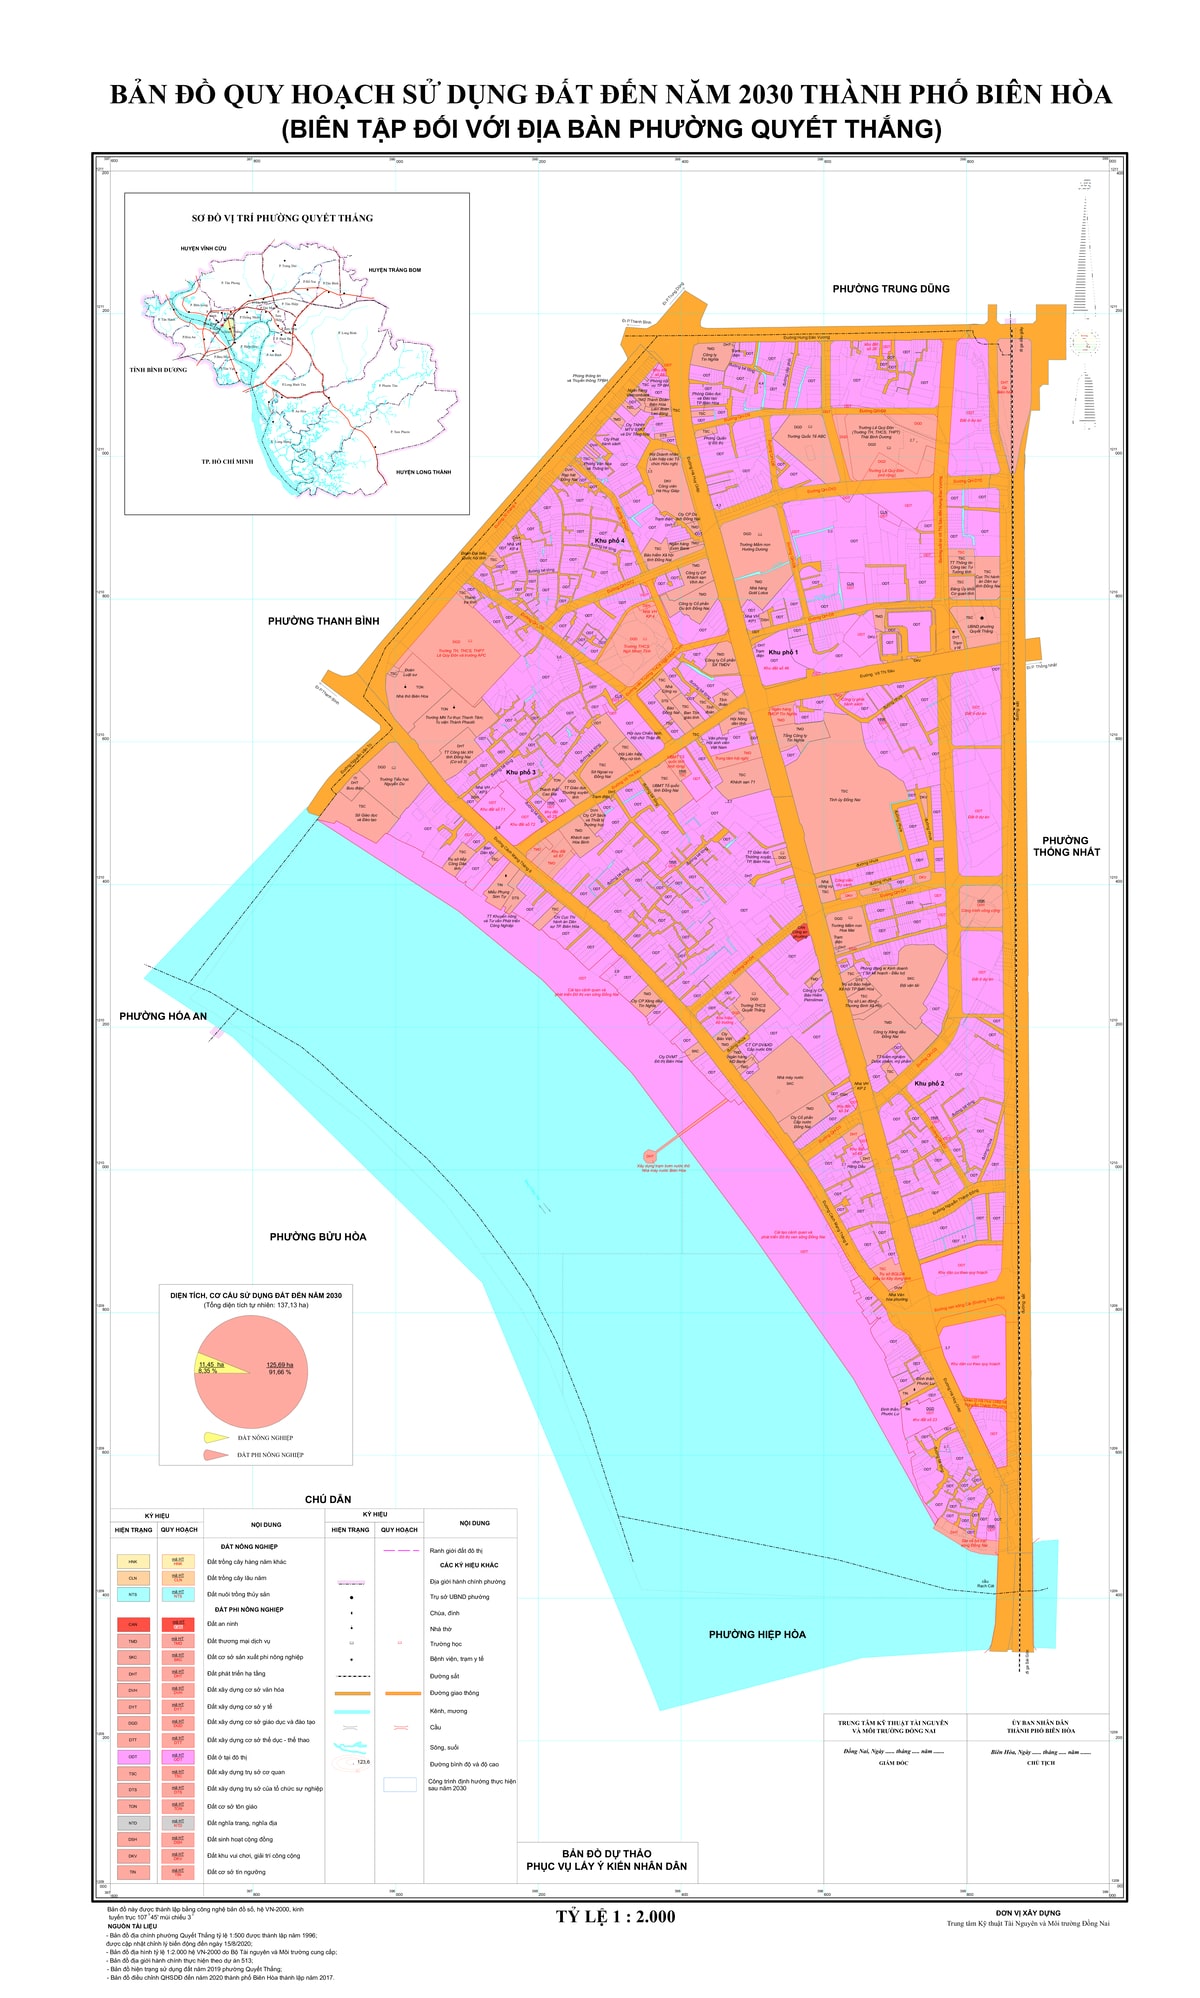 ản đồ quy hoạch phường Quyết Thắng, thành phố Biên Hòa, tỉnh Đồng Nai đến năm 2030